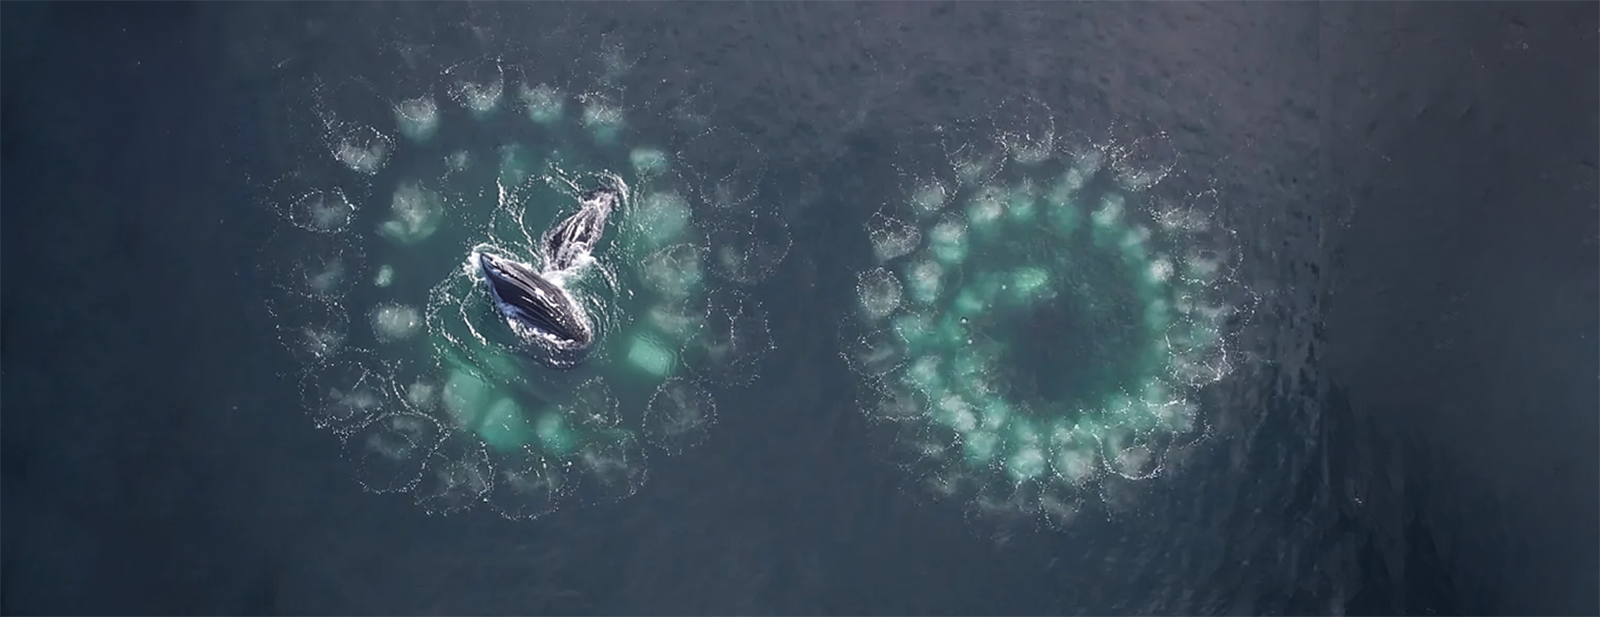 Deux baleines à bosse jaillissent hors de l'eau. © Scott, Adobe Stock   